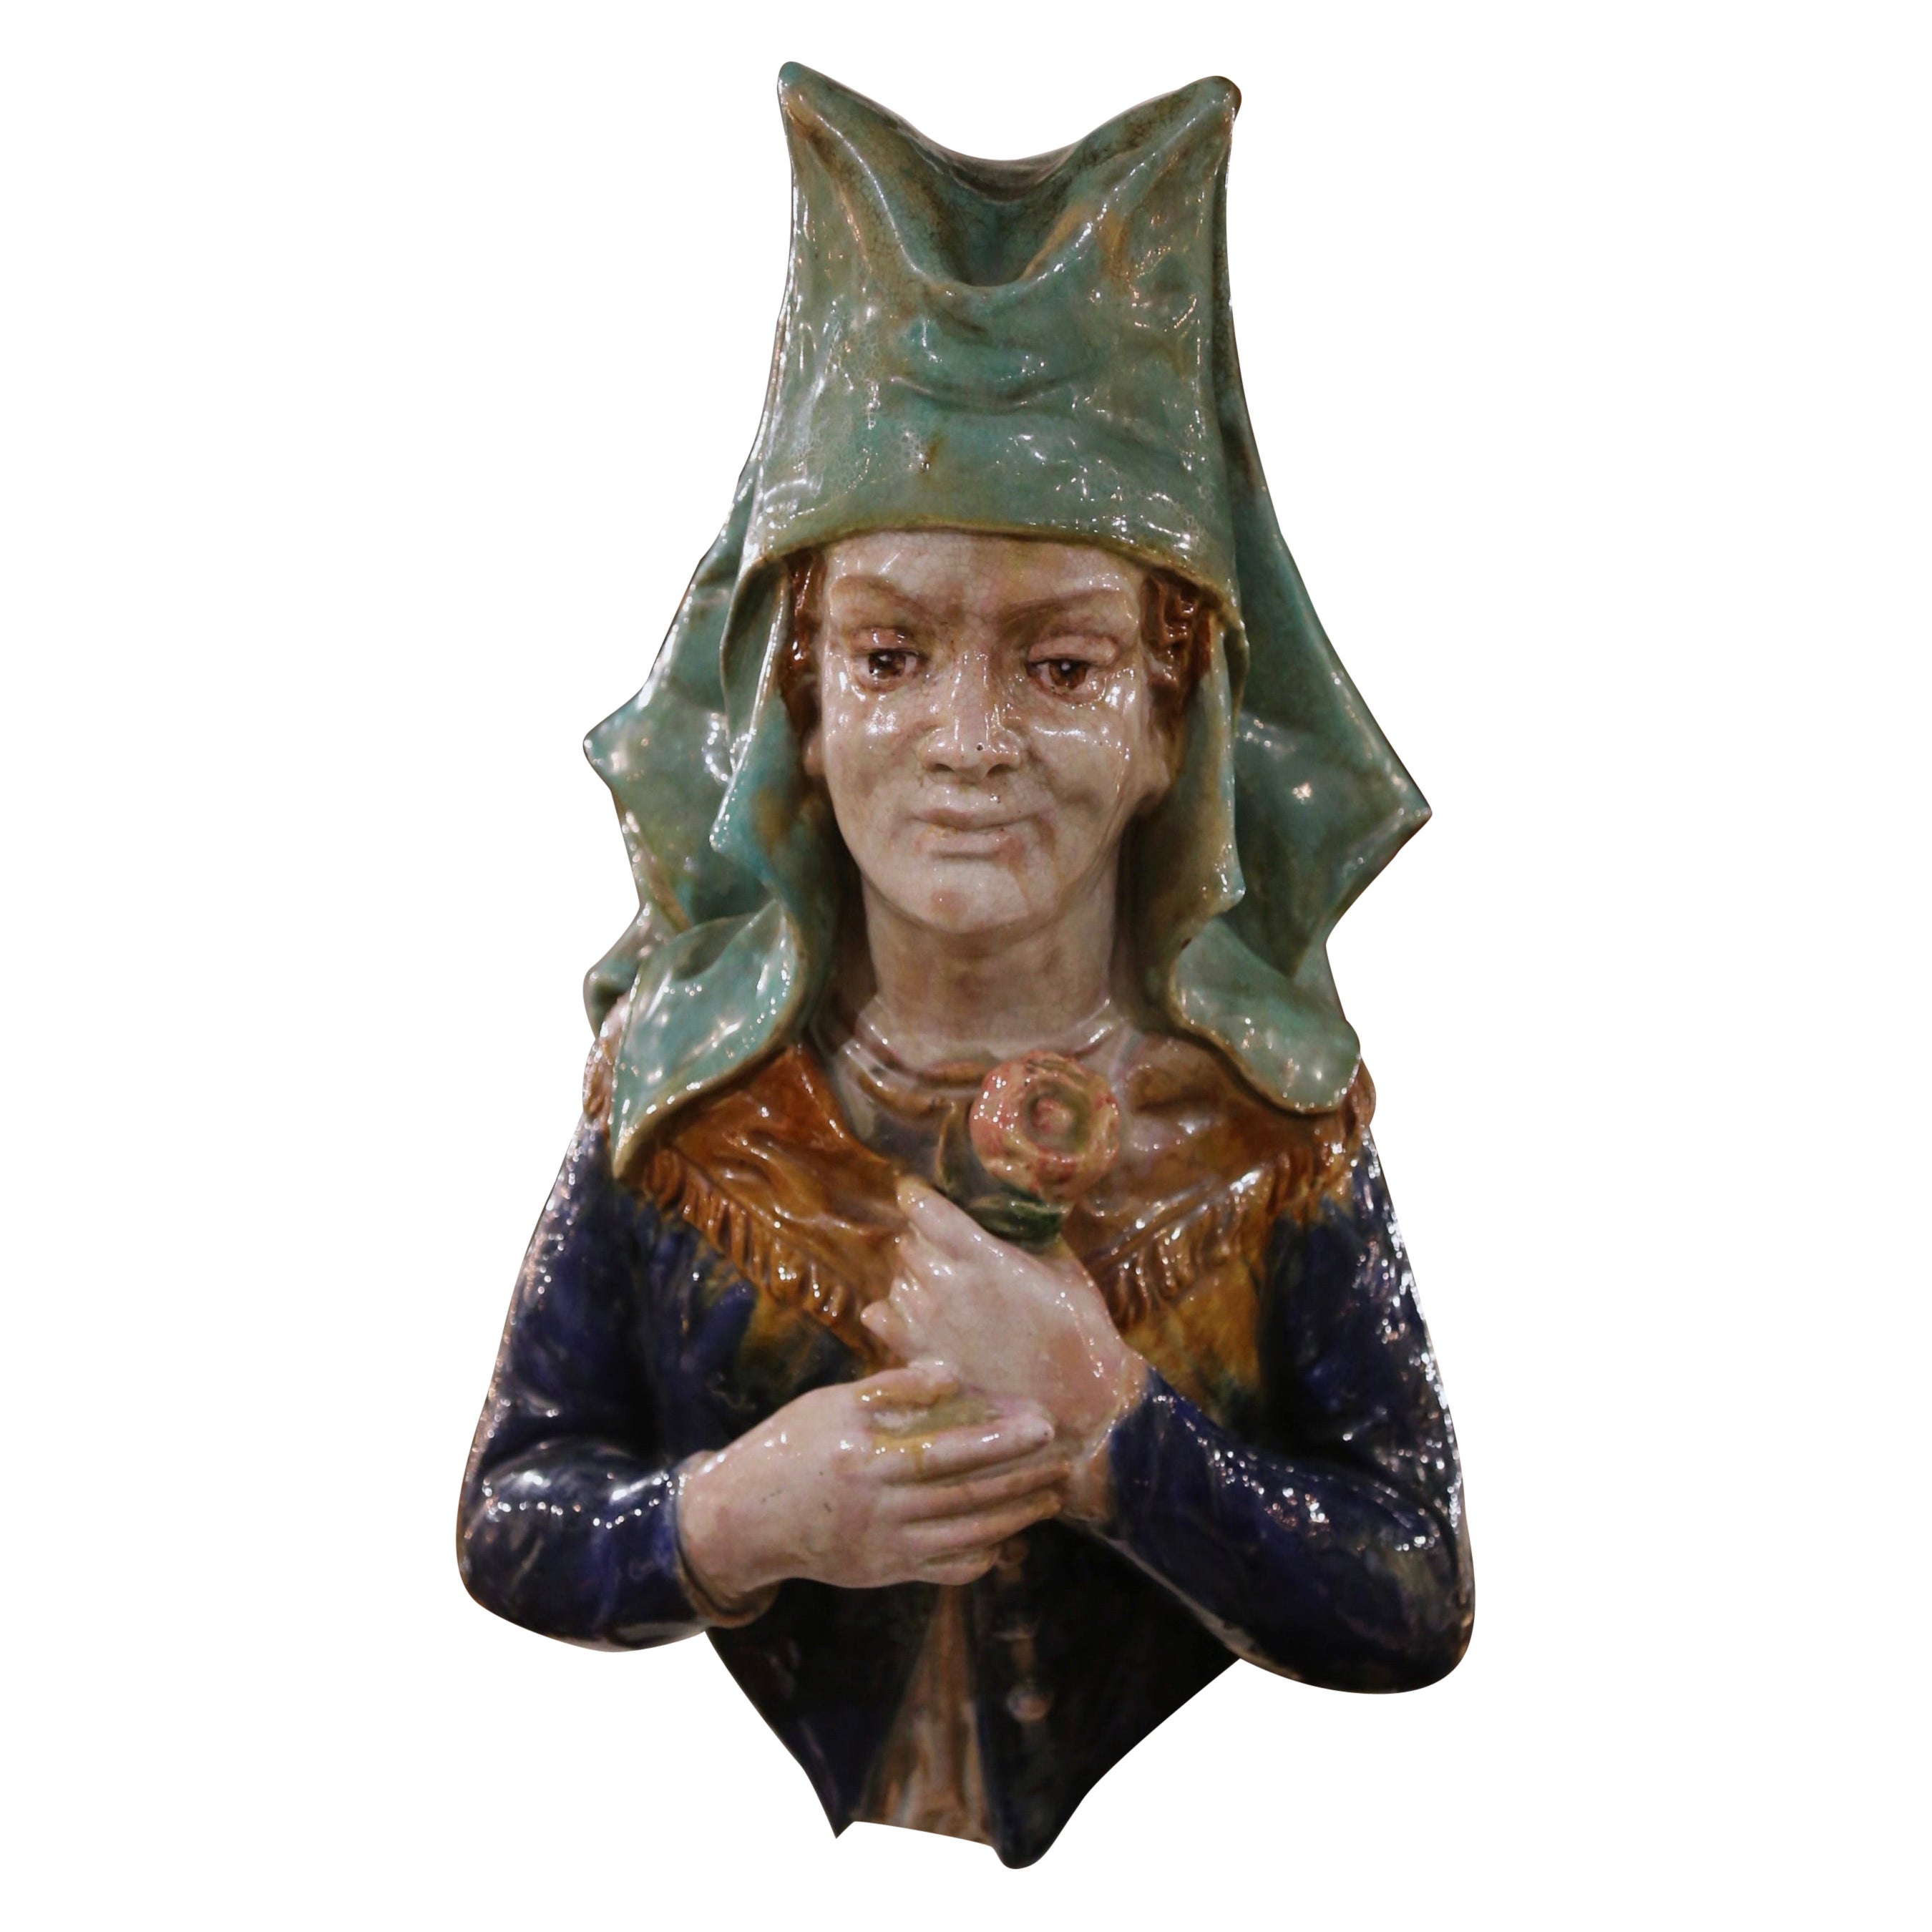 Buste de femme en terre cuite peint à la main et de style provincial français du 19e siècle